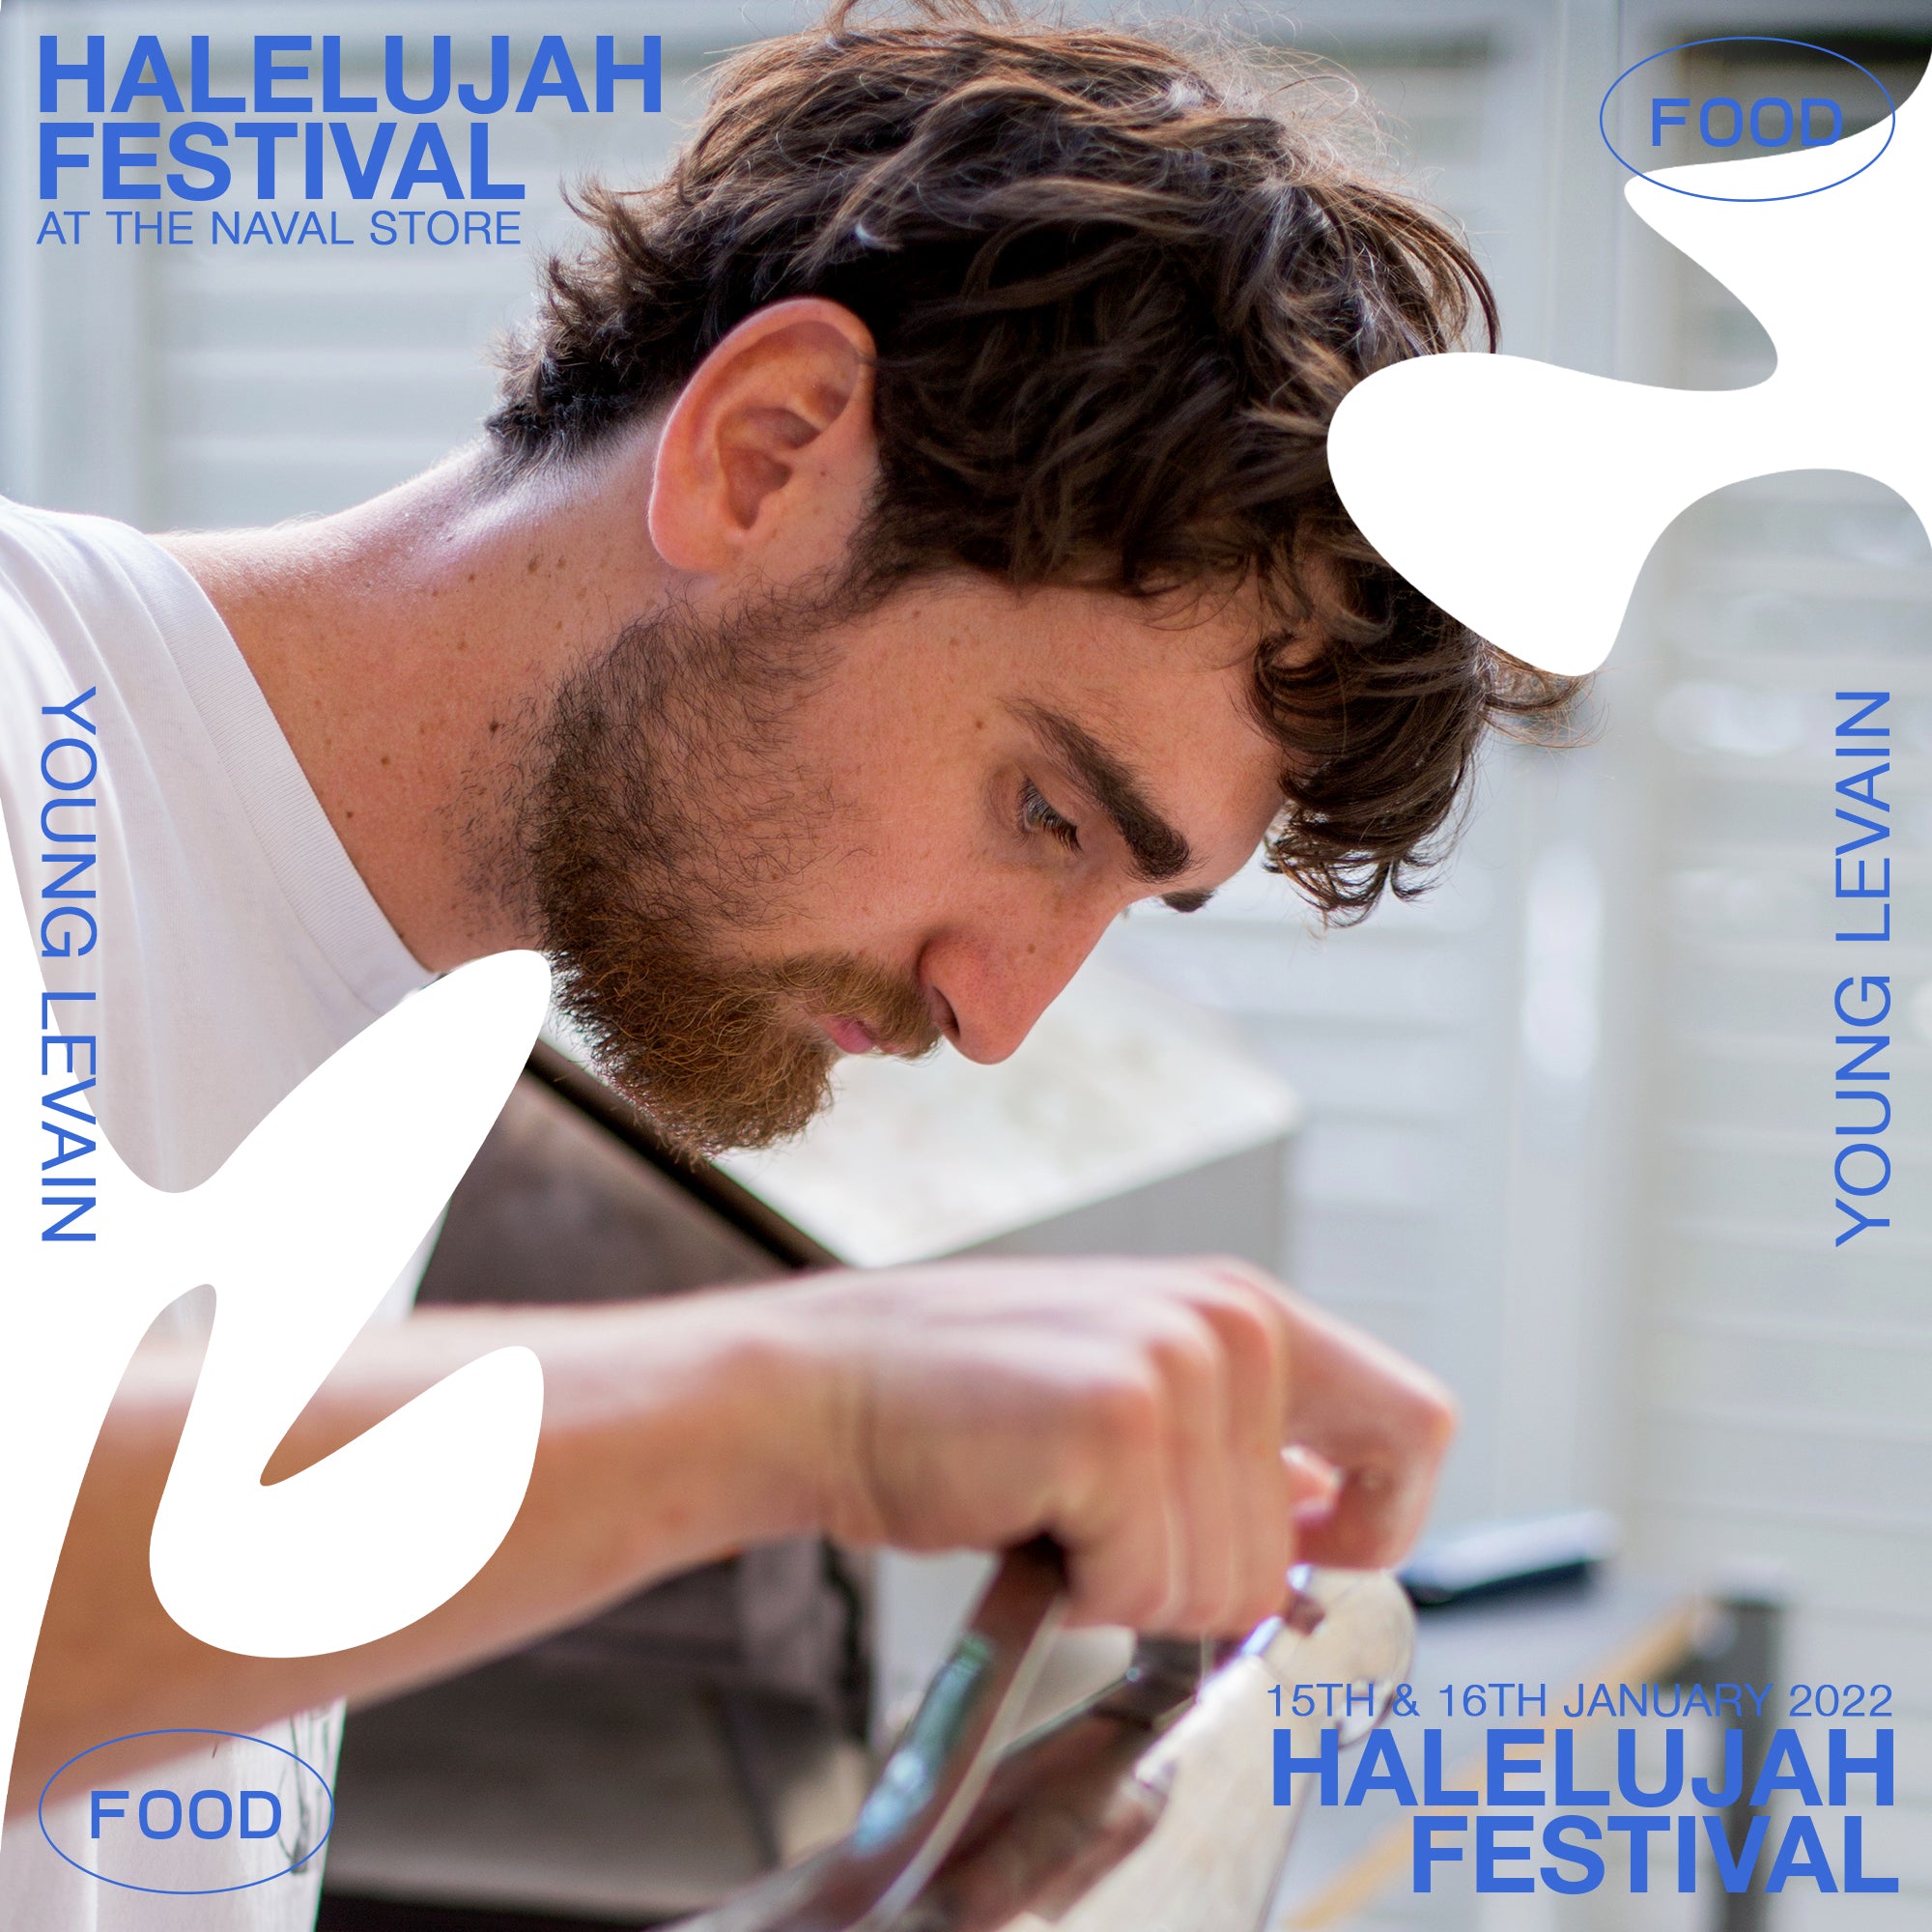 HALELUJAH ARTIST - YOUNG LEVAIN